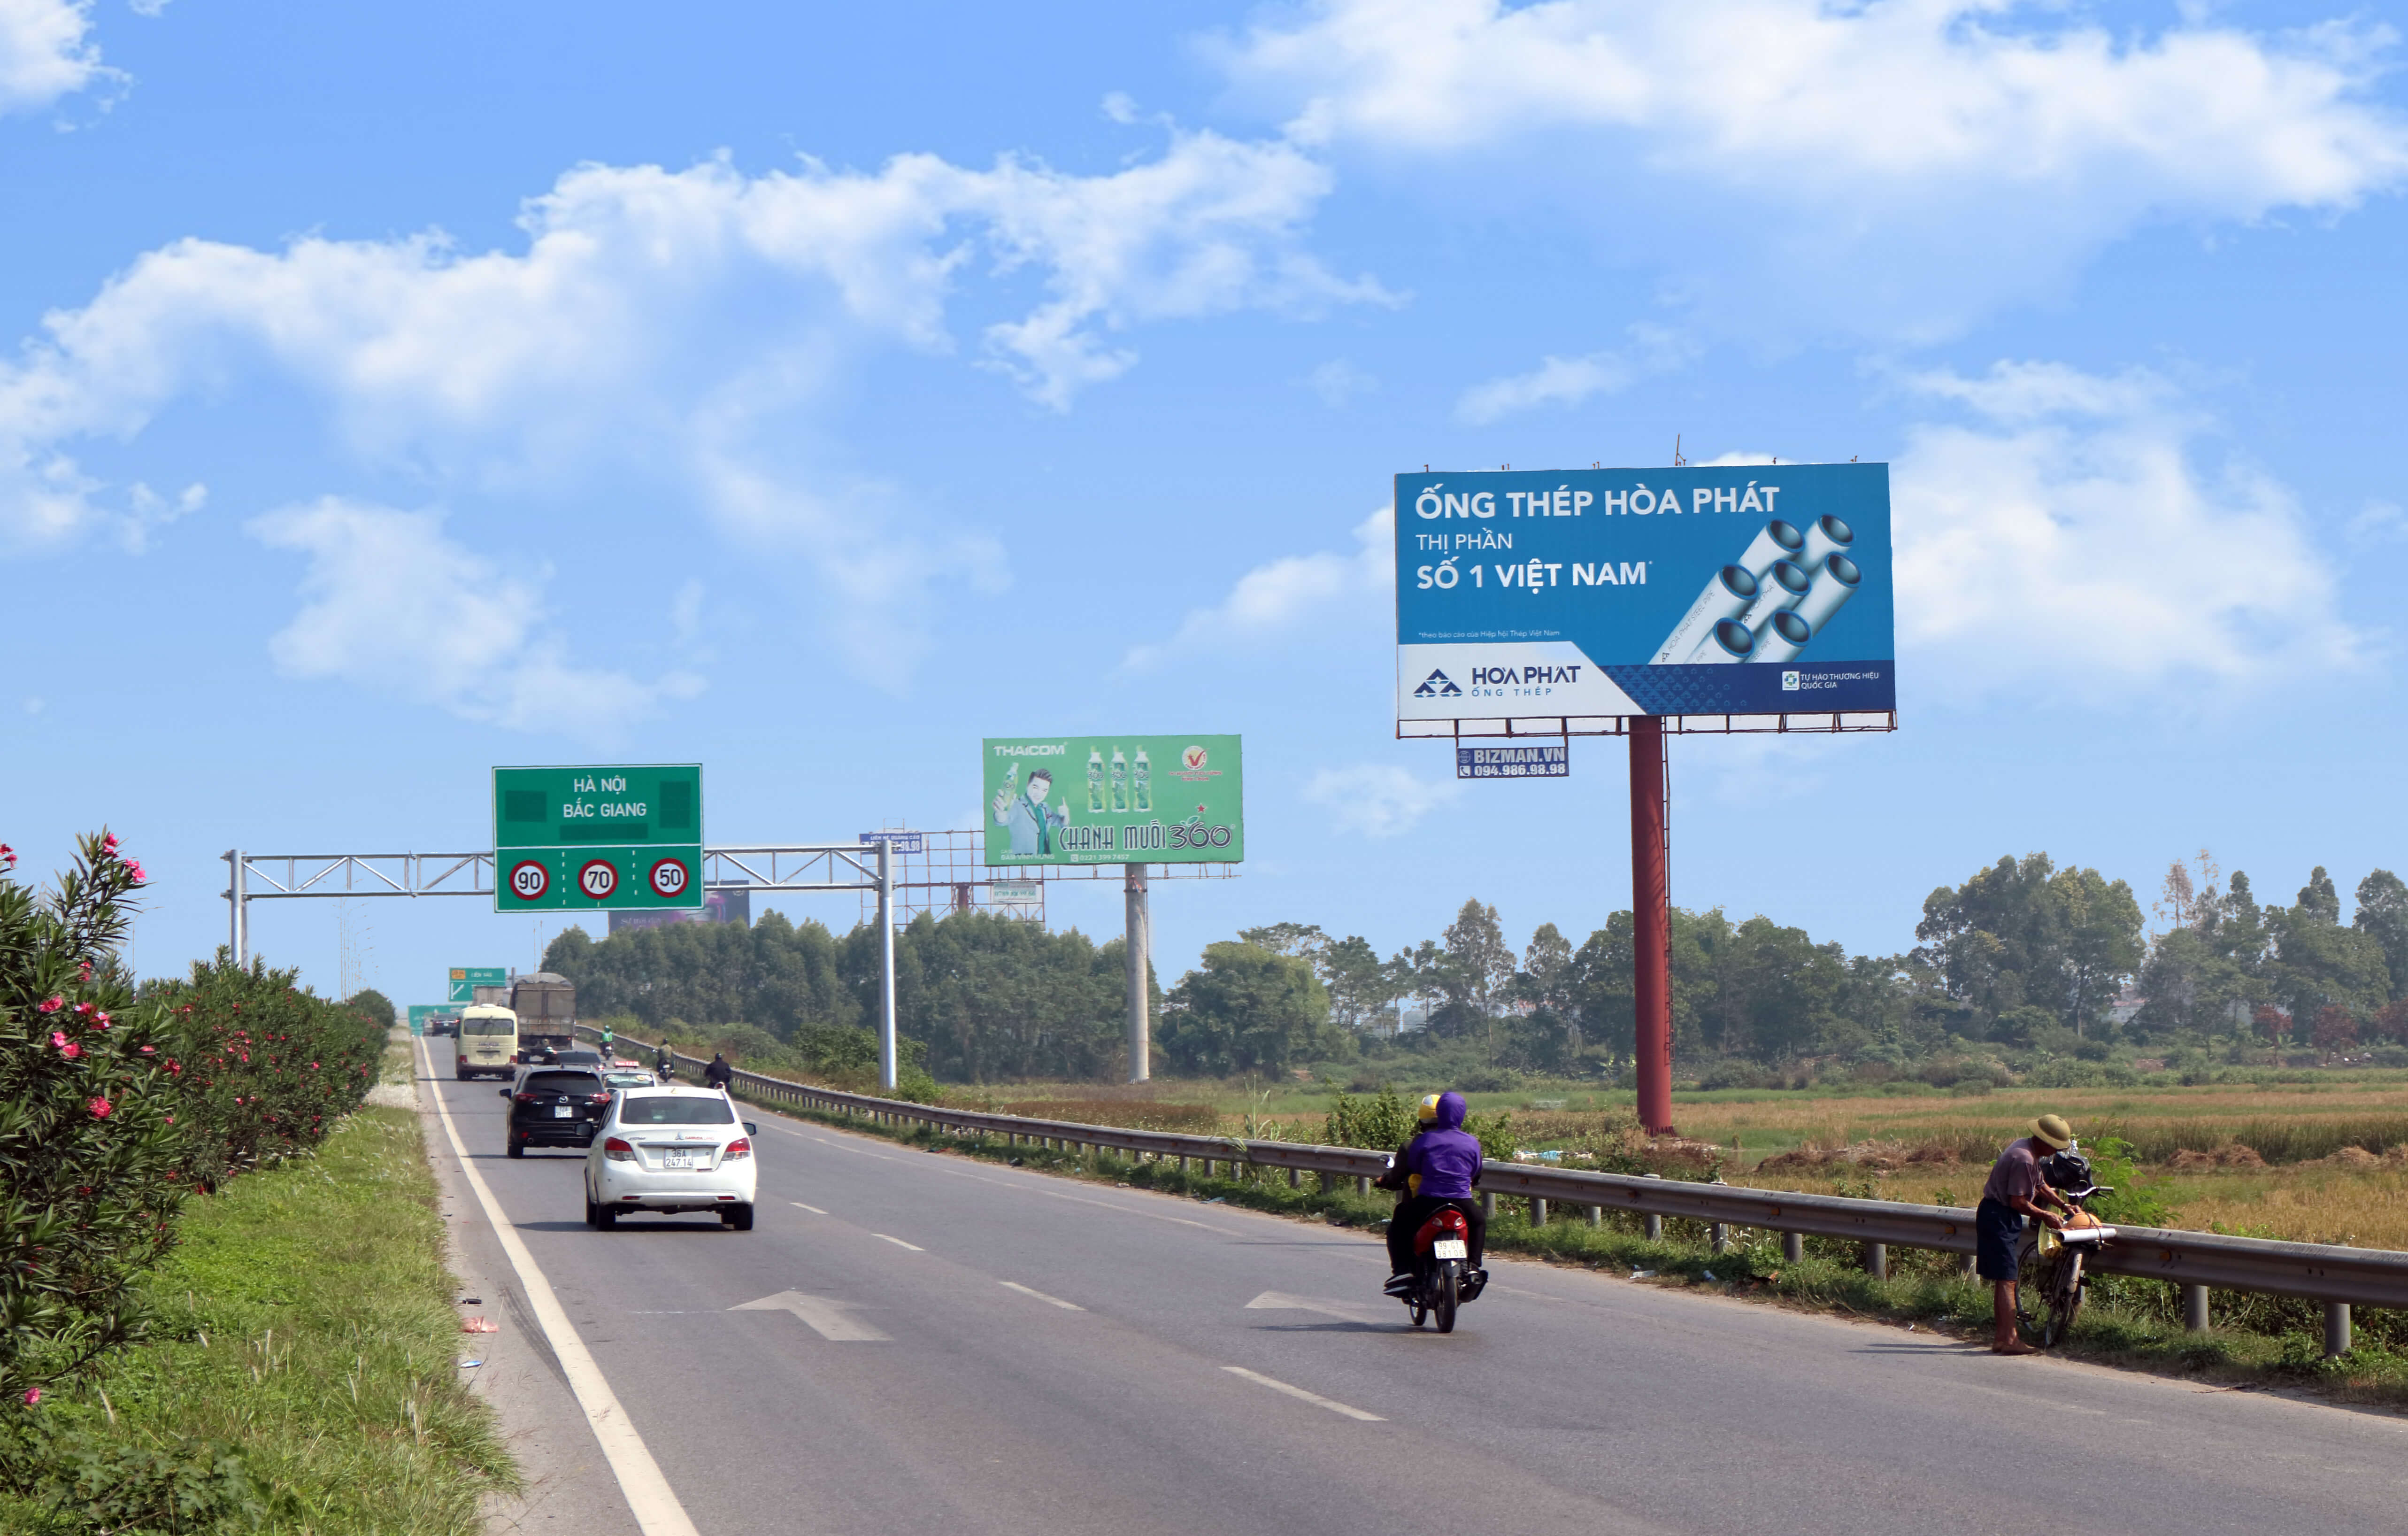 Vị trí 41B - Km H4/145: QL1A, Hà Nội - Lạng Sơn, đoạn qua Tp. Bắc Ninh